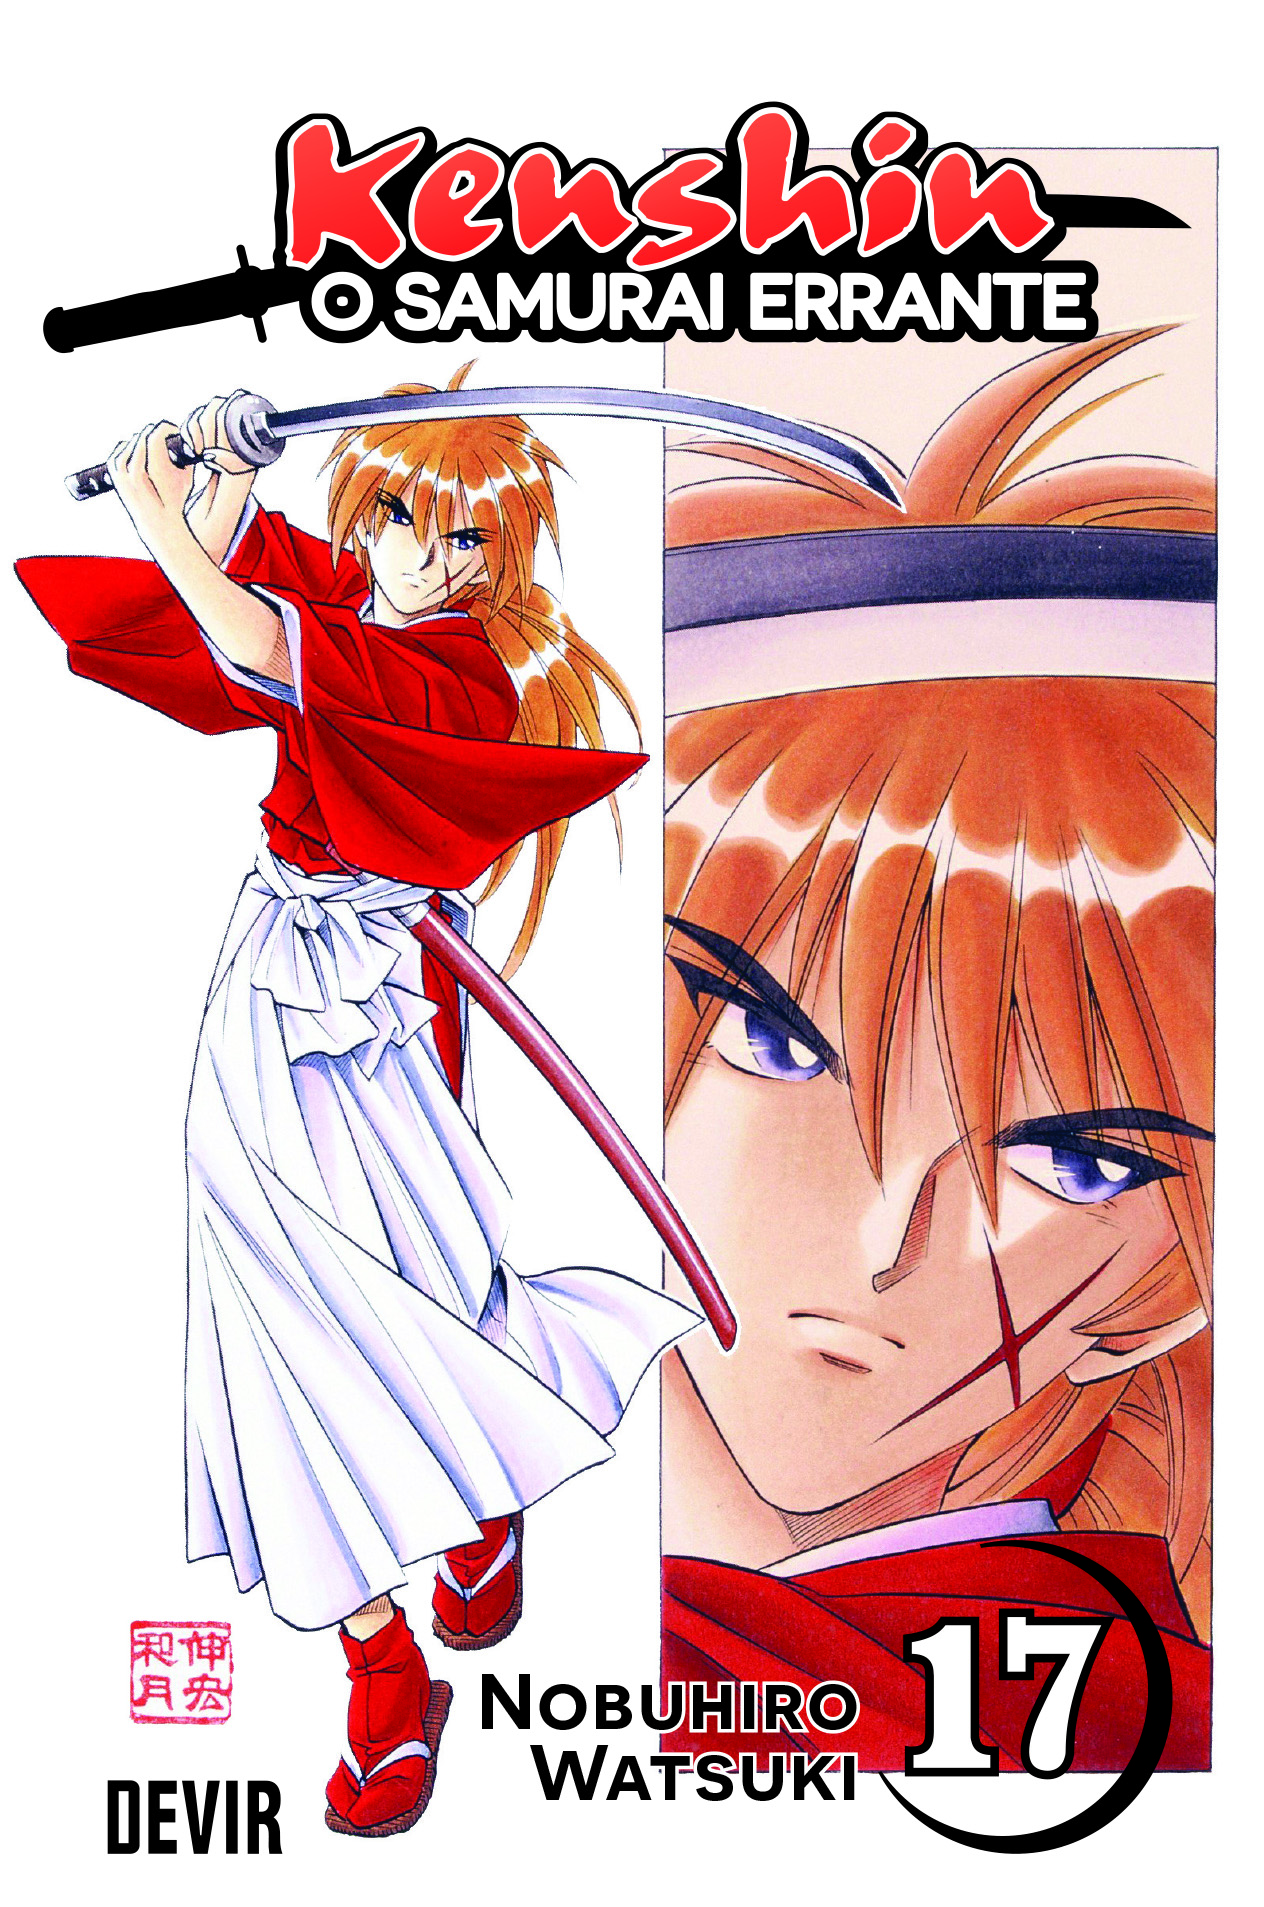 Jujutsu Kaisen #03 pela Devir e Kenshin aumenta de preço